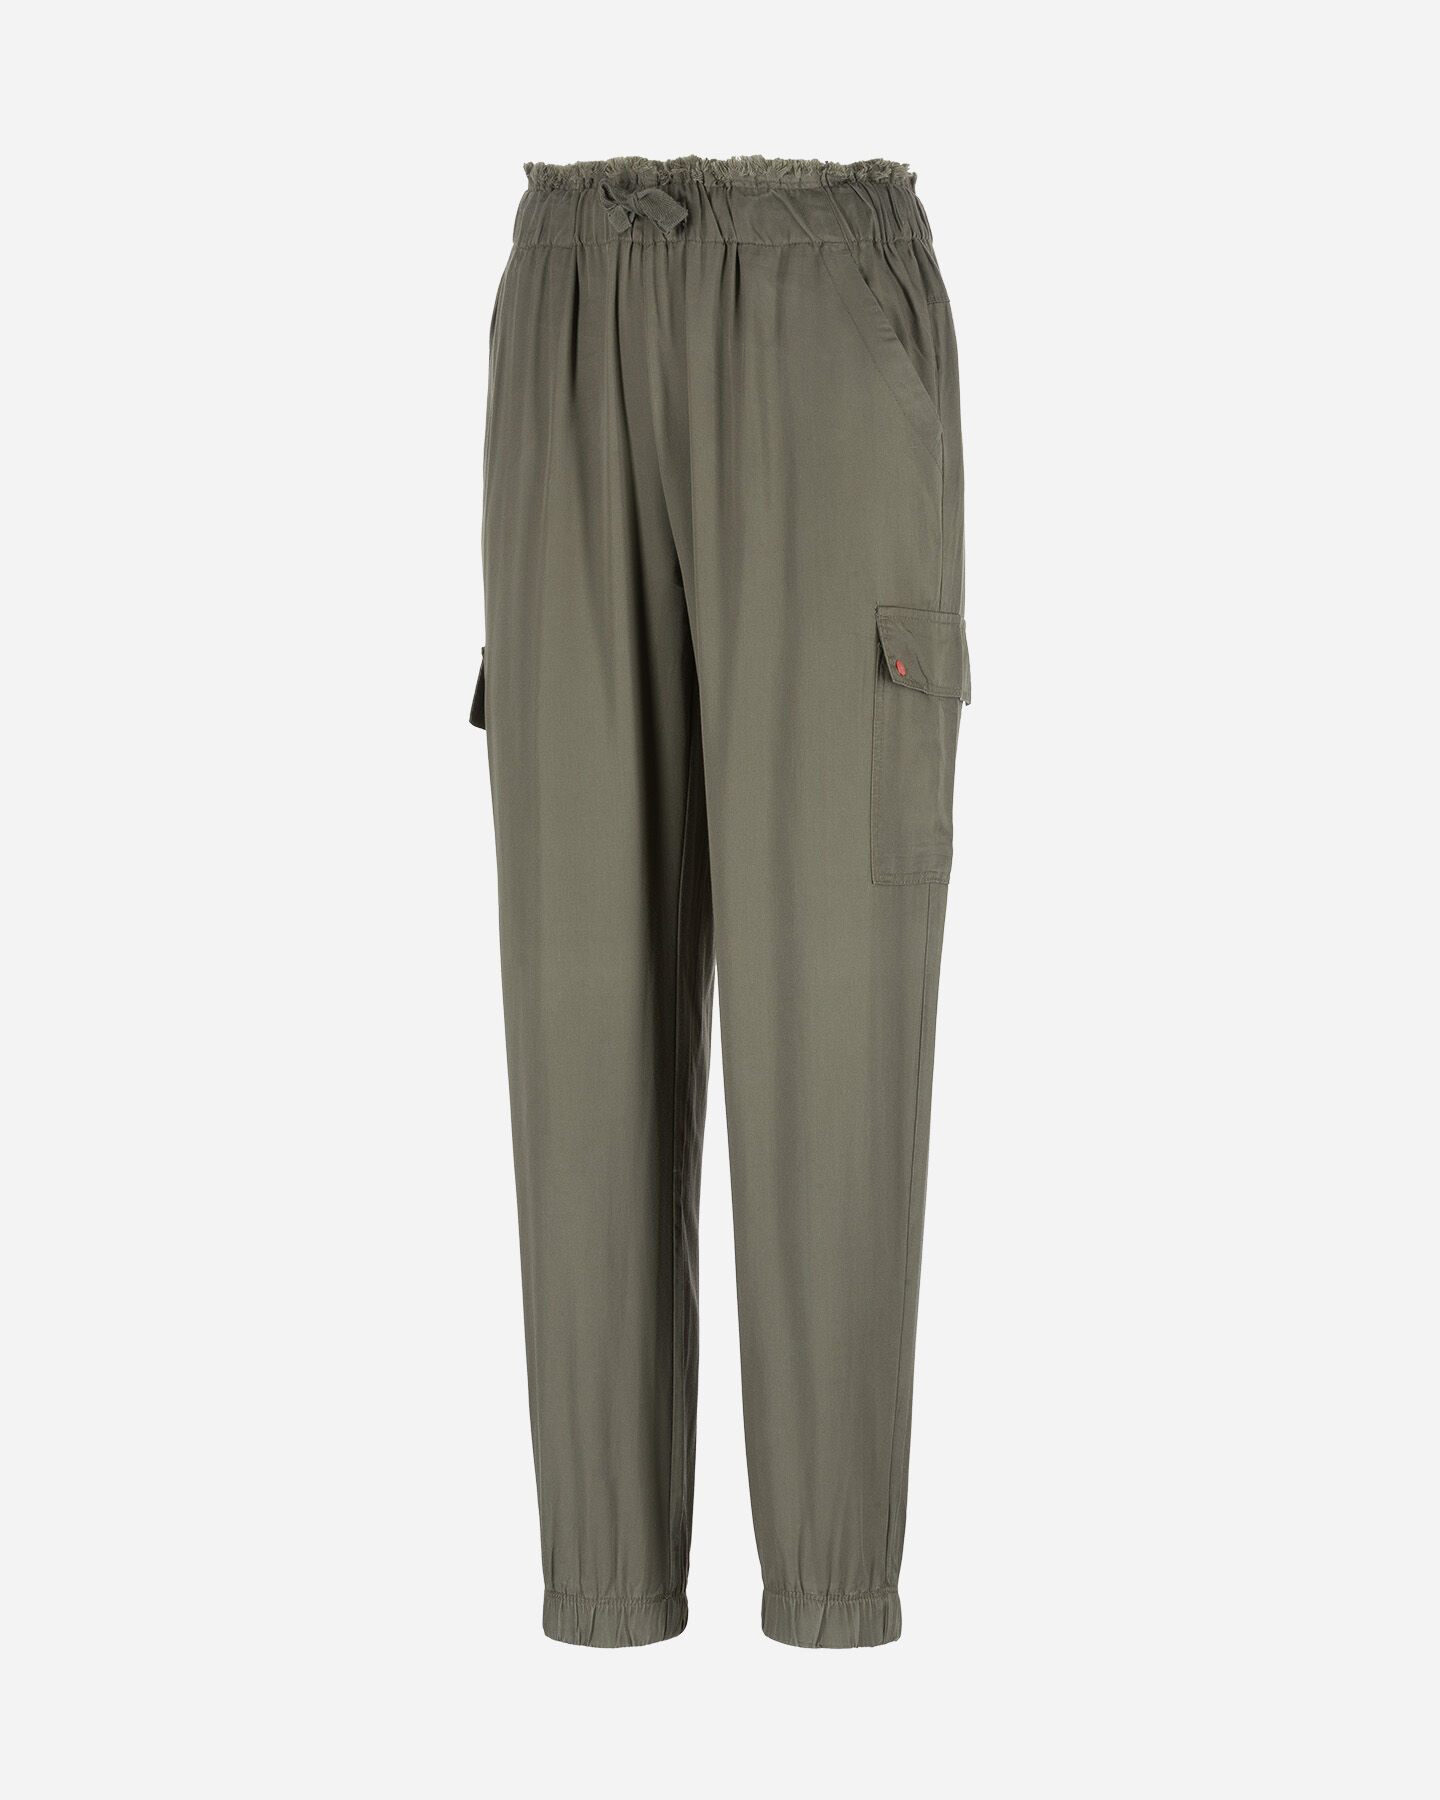  Pantalone MISTRAL CARGO W S4074173|842|S scatto 0